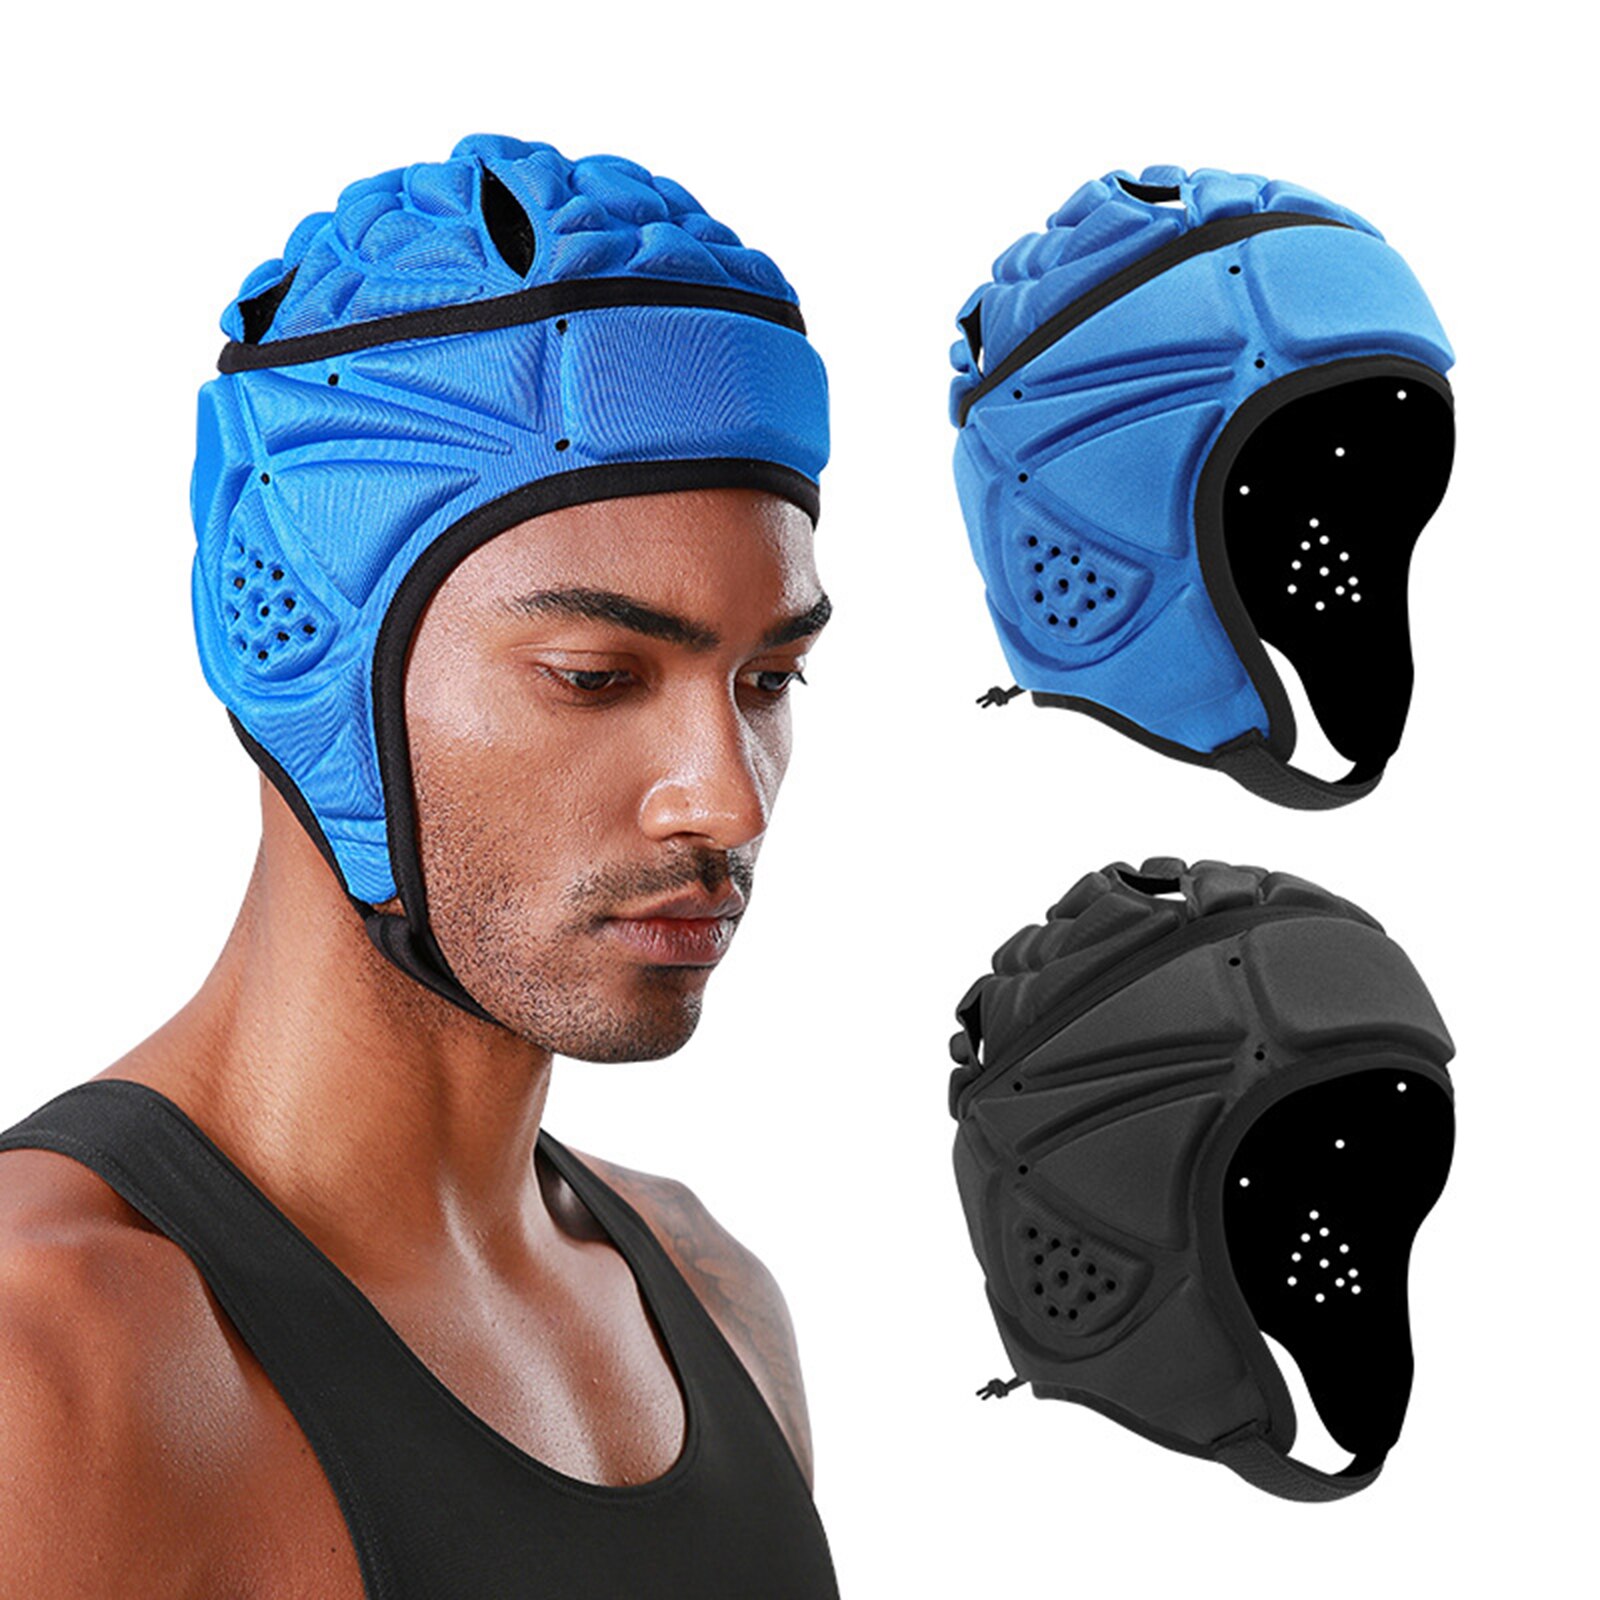 Volwassenen Beschermende Hoed Unisex Shockproof Veiligheid Helm Met Ventilatieopeningen Voor Rugby Hockey Zwart/Blauw